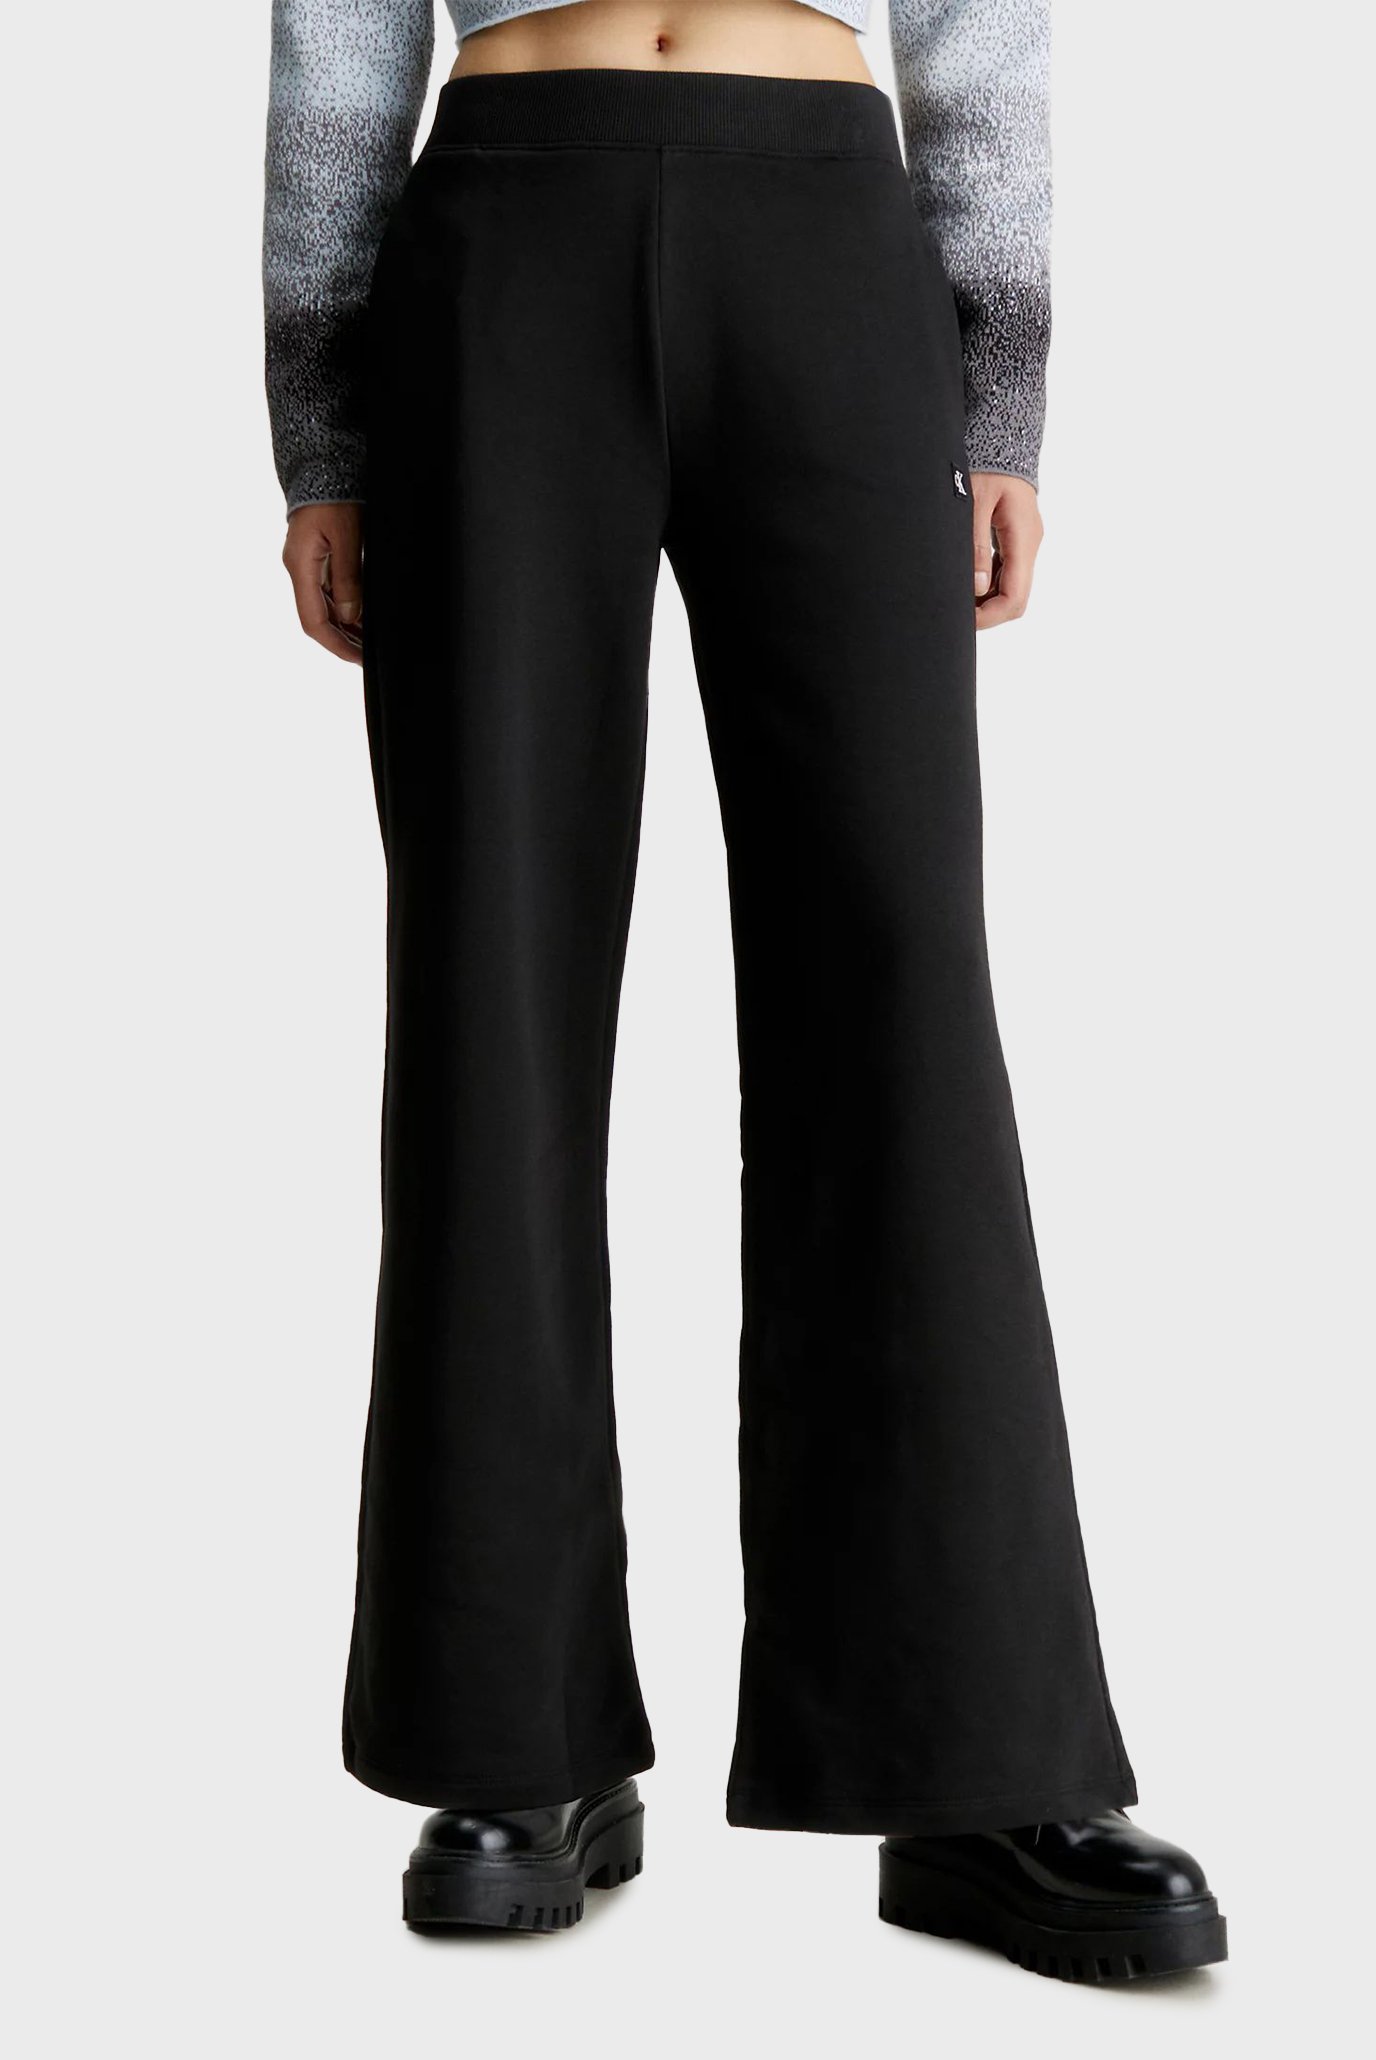 Жіночі чорні спортивні штани CK EMBRO BADGE KNIT PANT 1